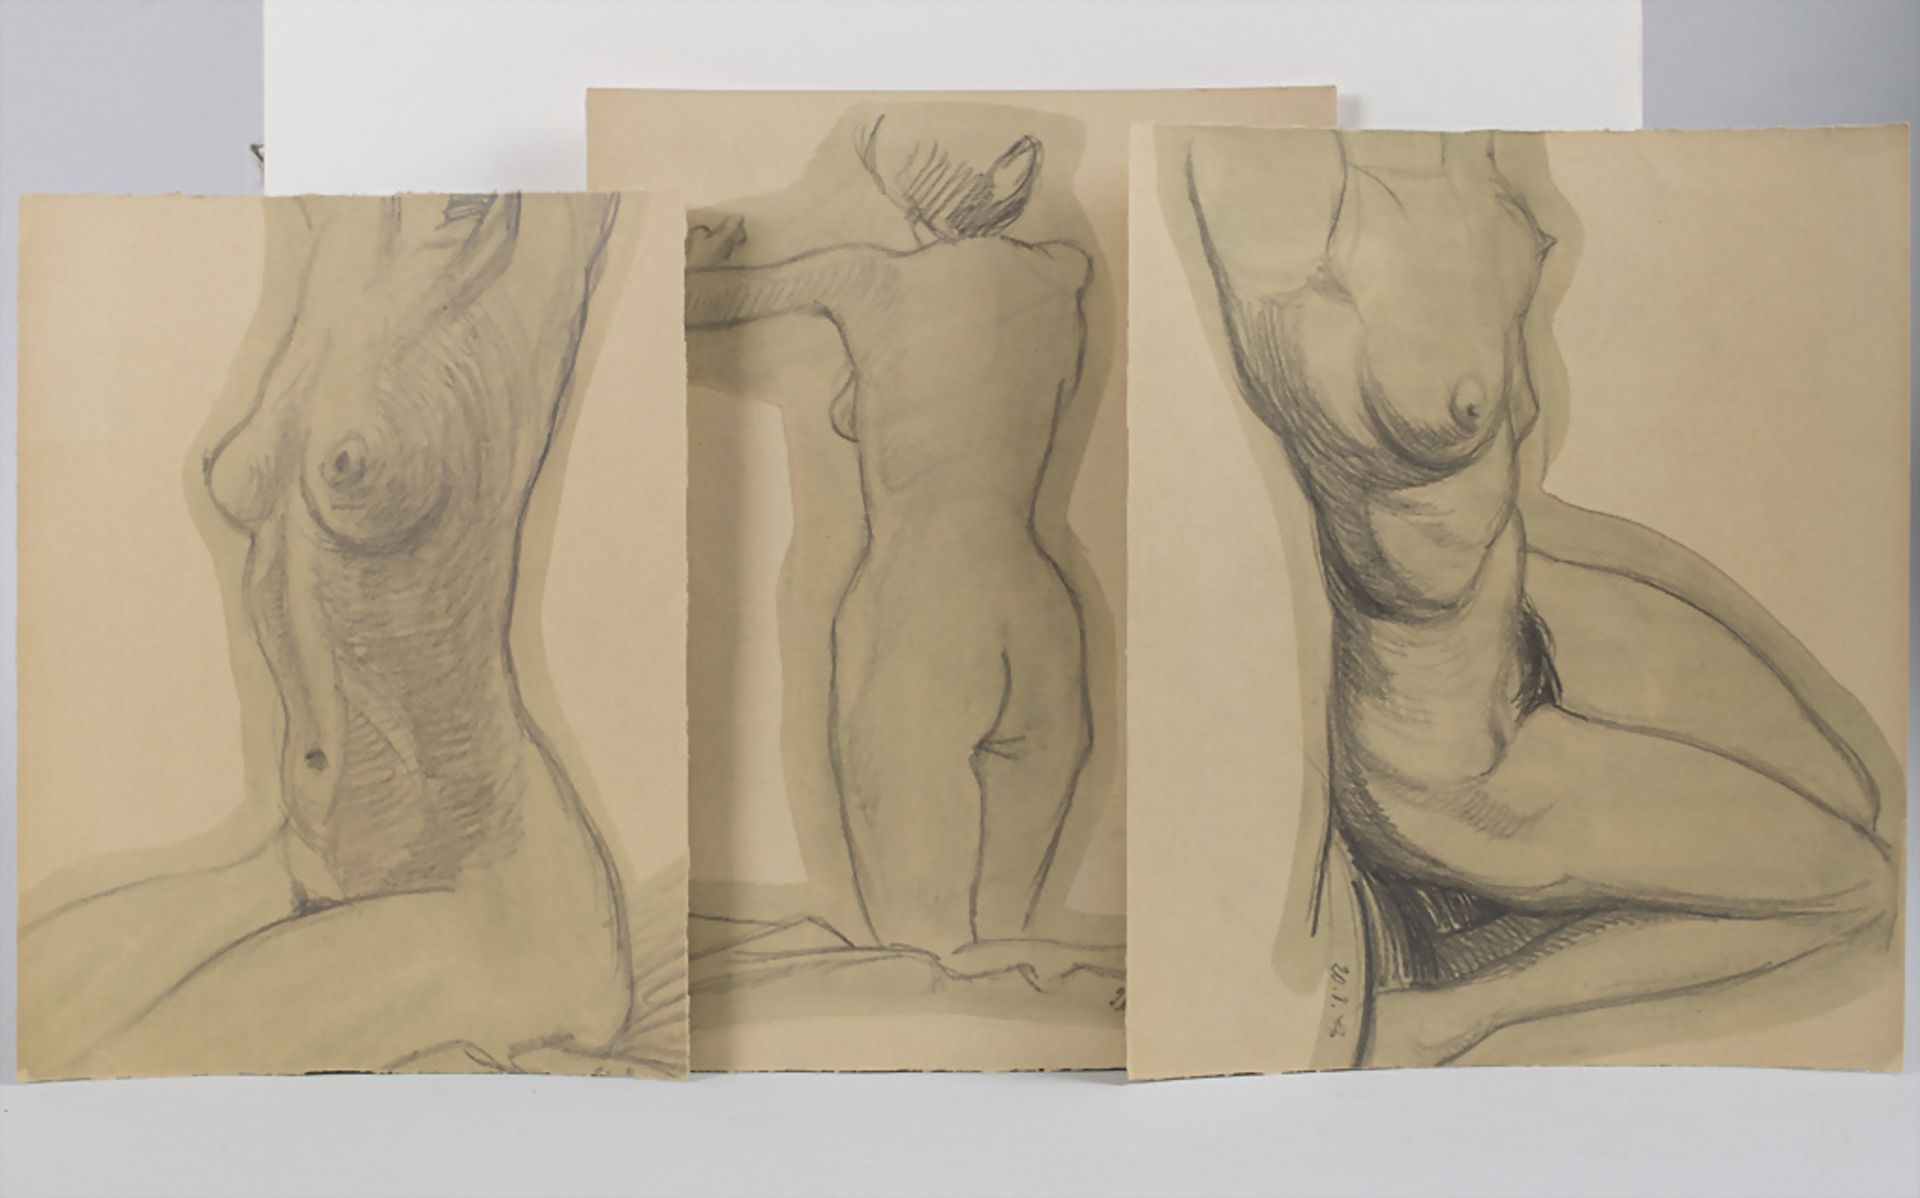 Drei Frauenakte / Three female nudes, 1947